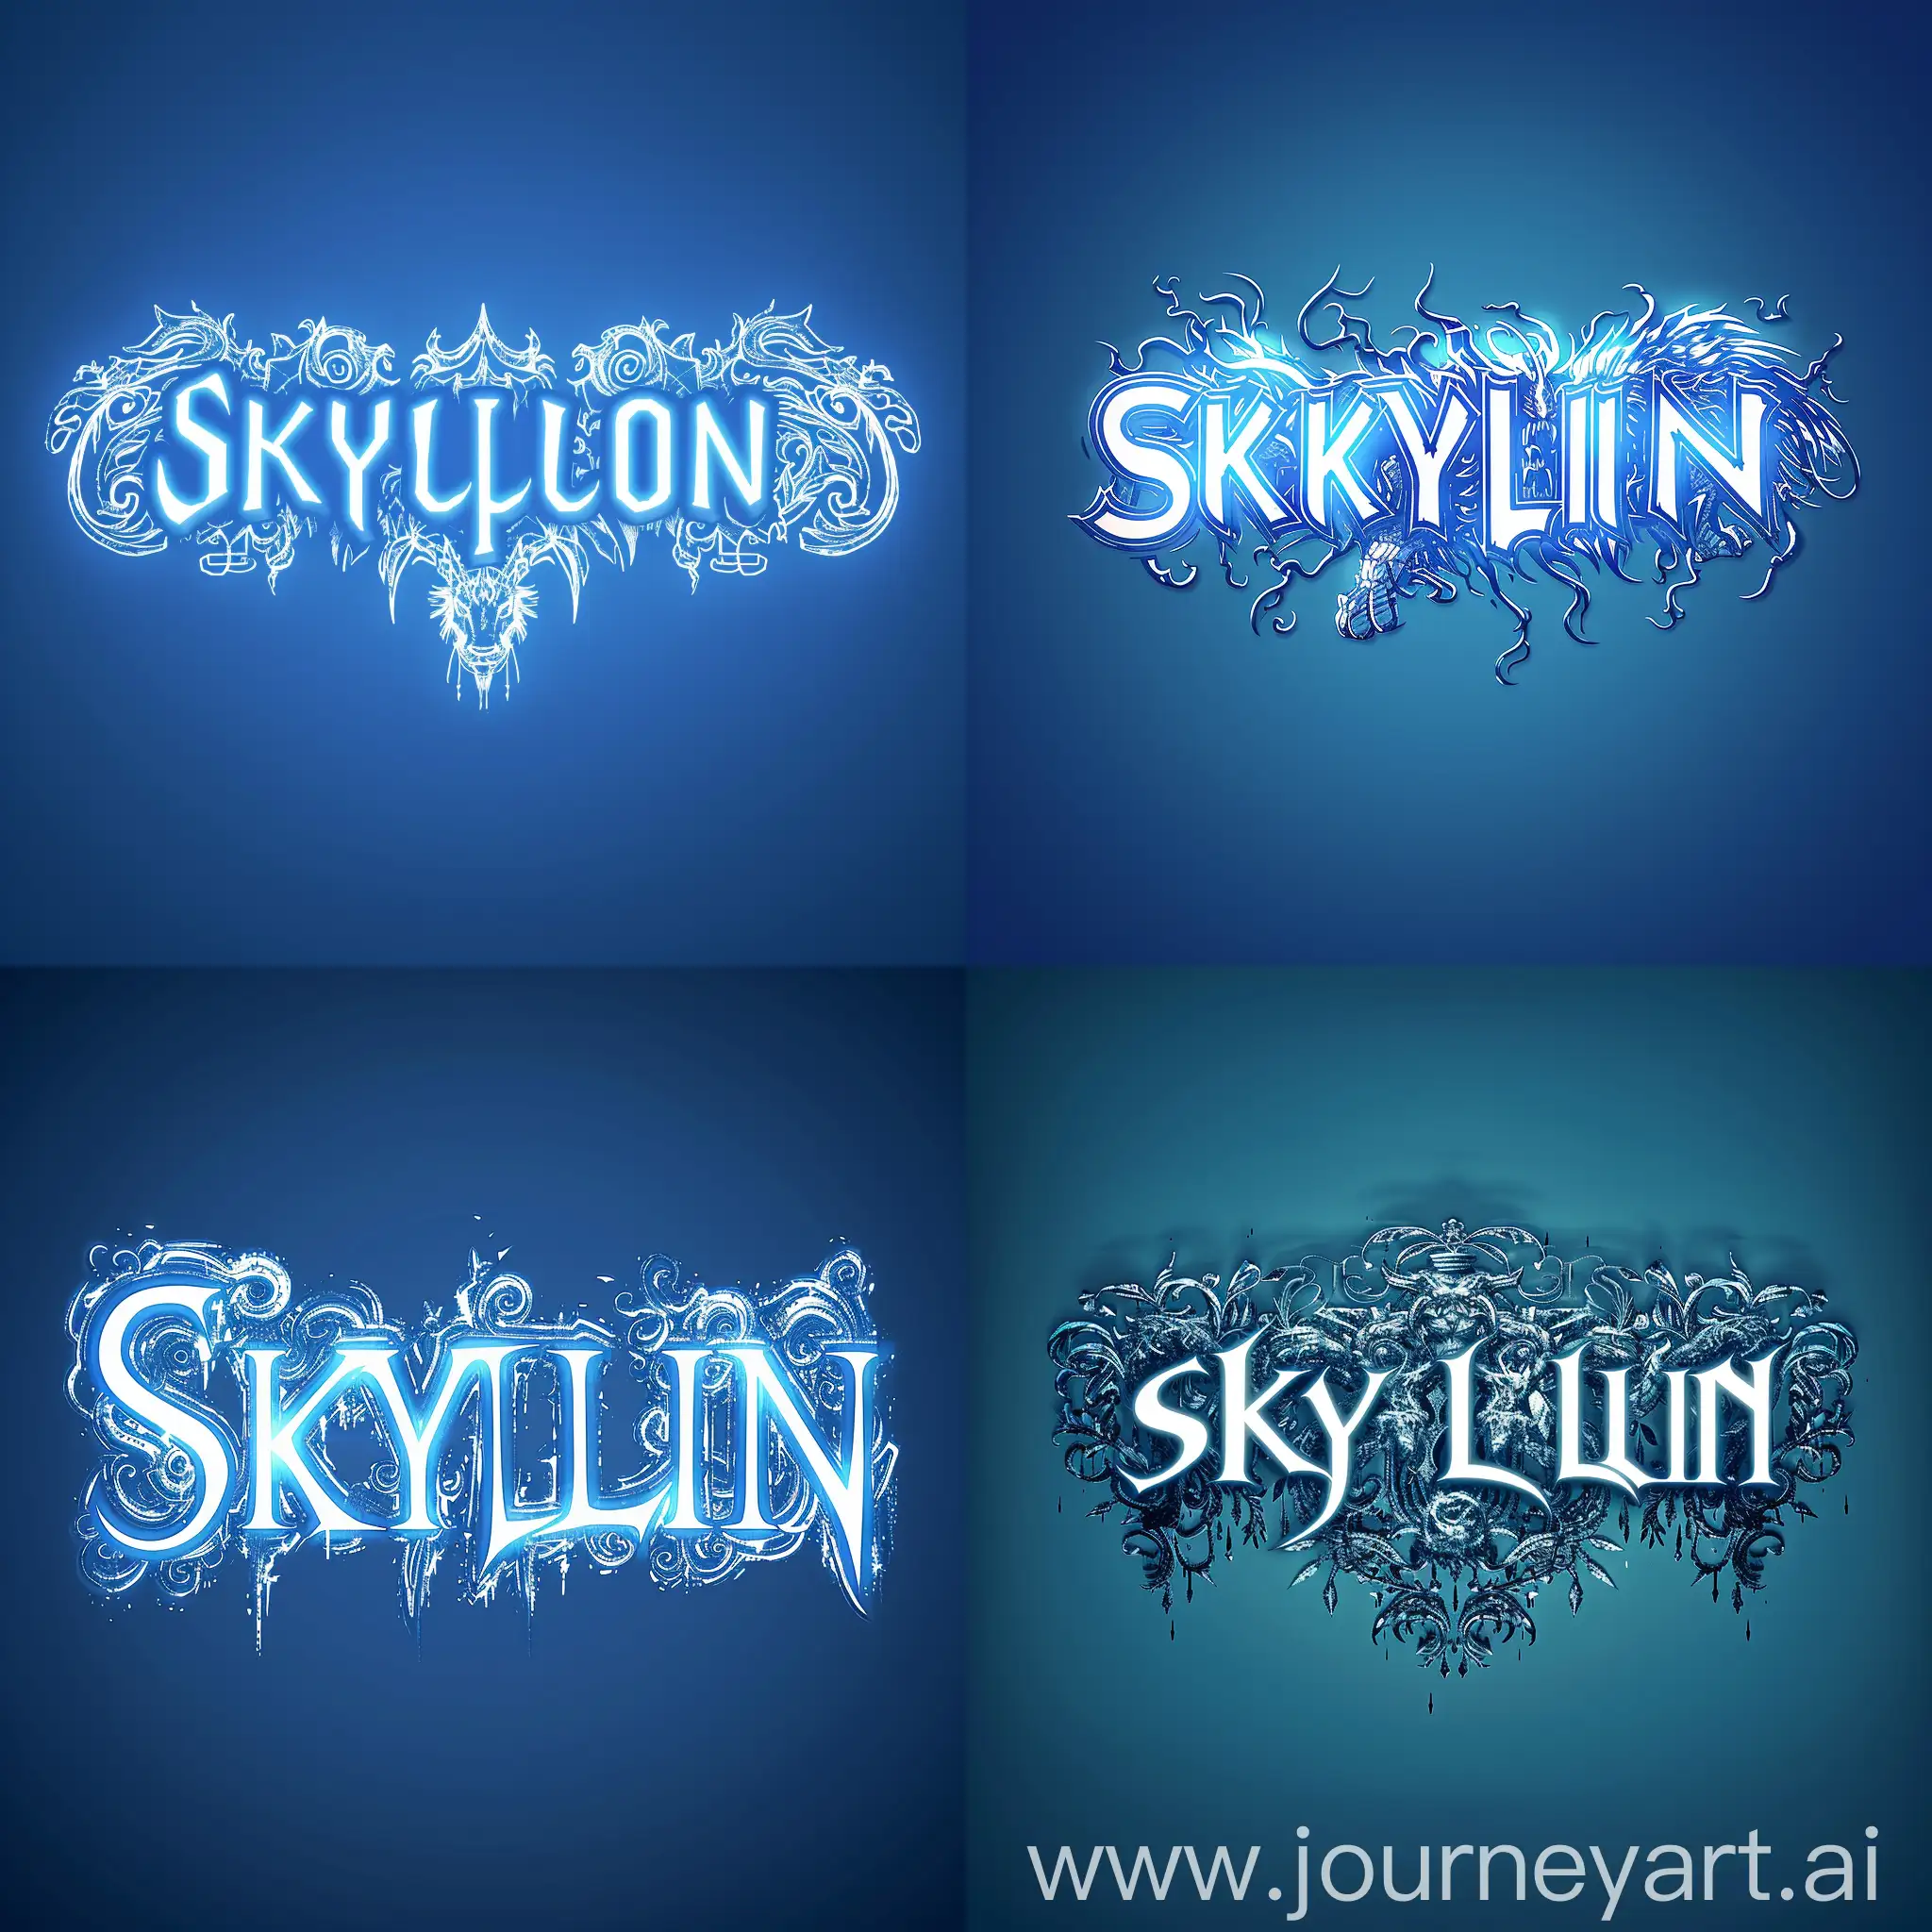 Mystical-SKYLION-Emblem-on-Blue-Background-with-Monster-Hunter-Font